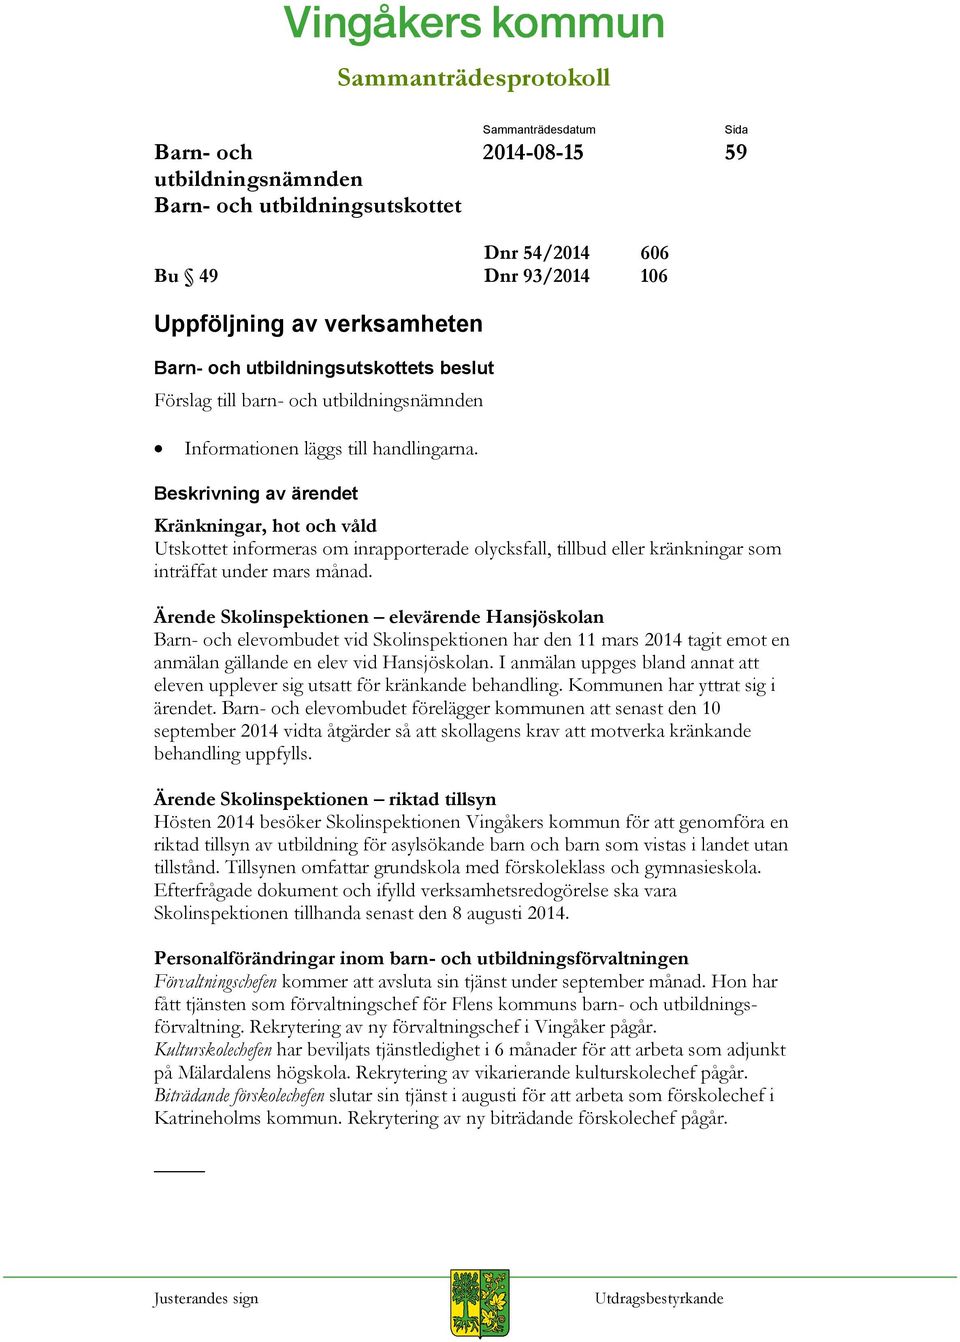 Ärende Skolinspektionen elevärende Hansjöskolan elevombudet vid Skolinspektionen har den 11 mars 2014 tagit emot en anmälan gällande en elev vid Hansjöskolan.